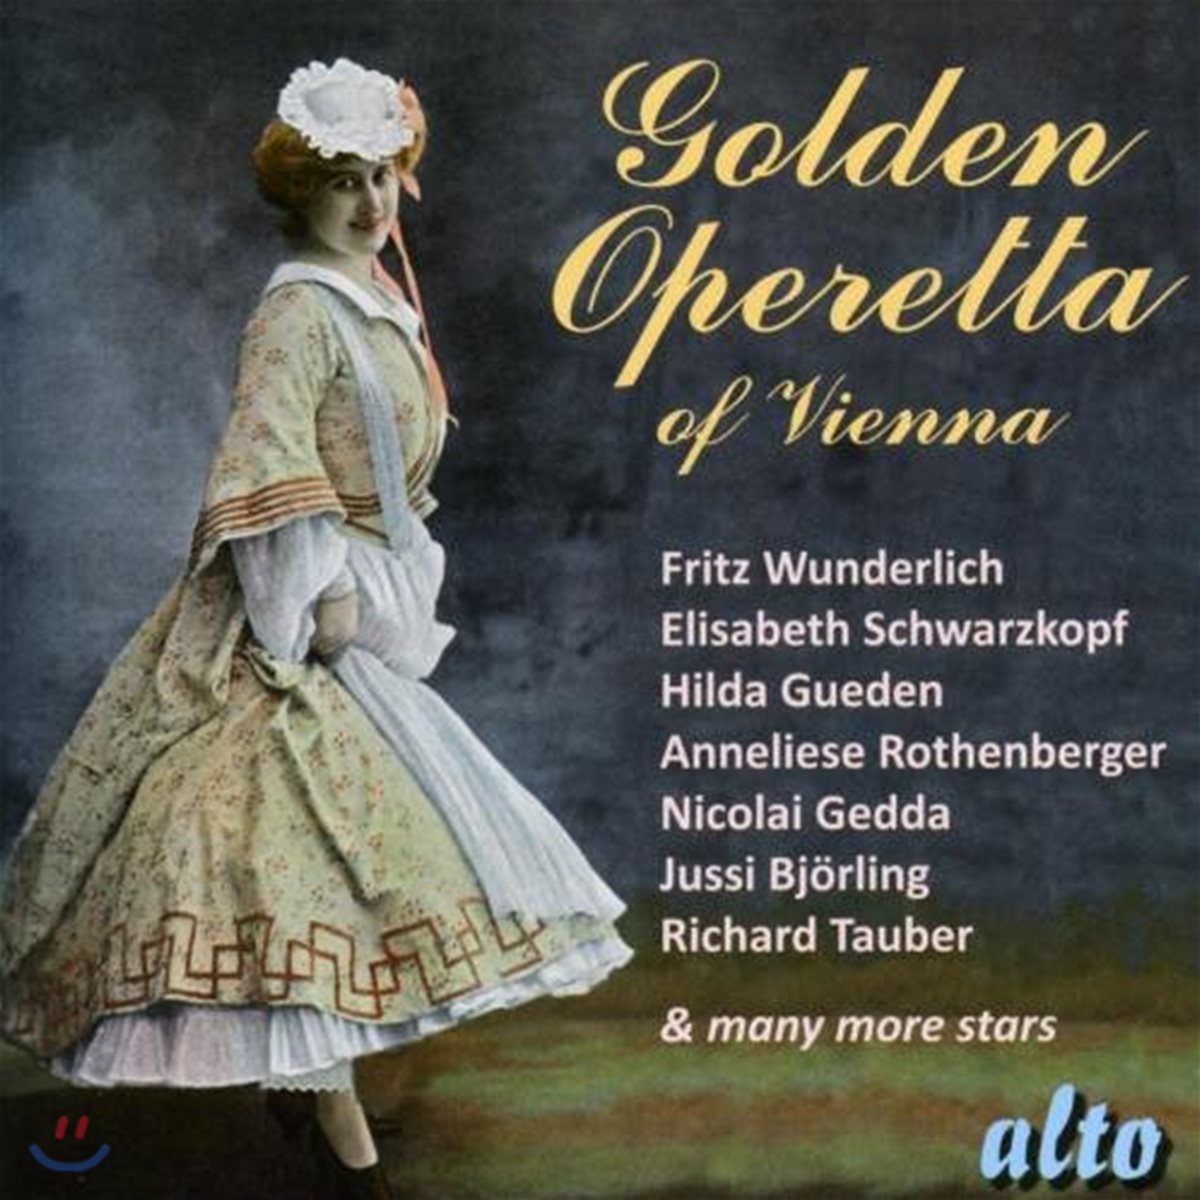 비엔나 오페레타 모음집 (Golden Operetta of Vienna)